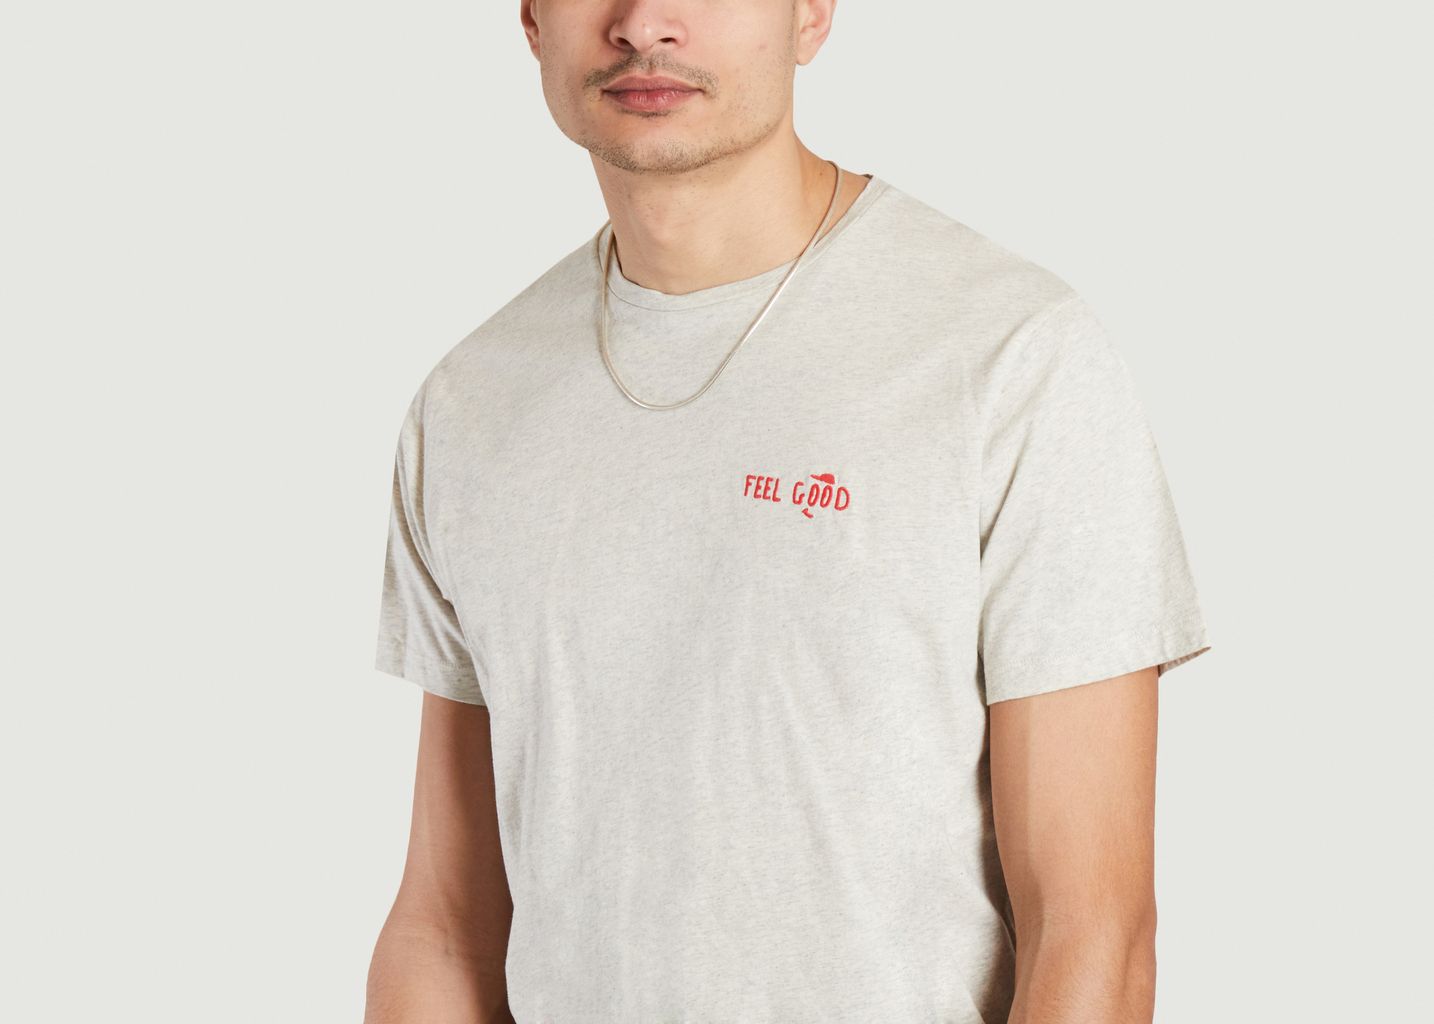 Pako T-Shirt aus Baumwolle - Cuisse de Grenouille